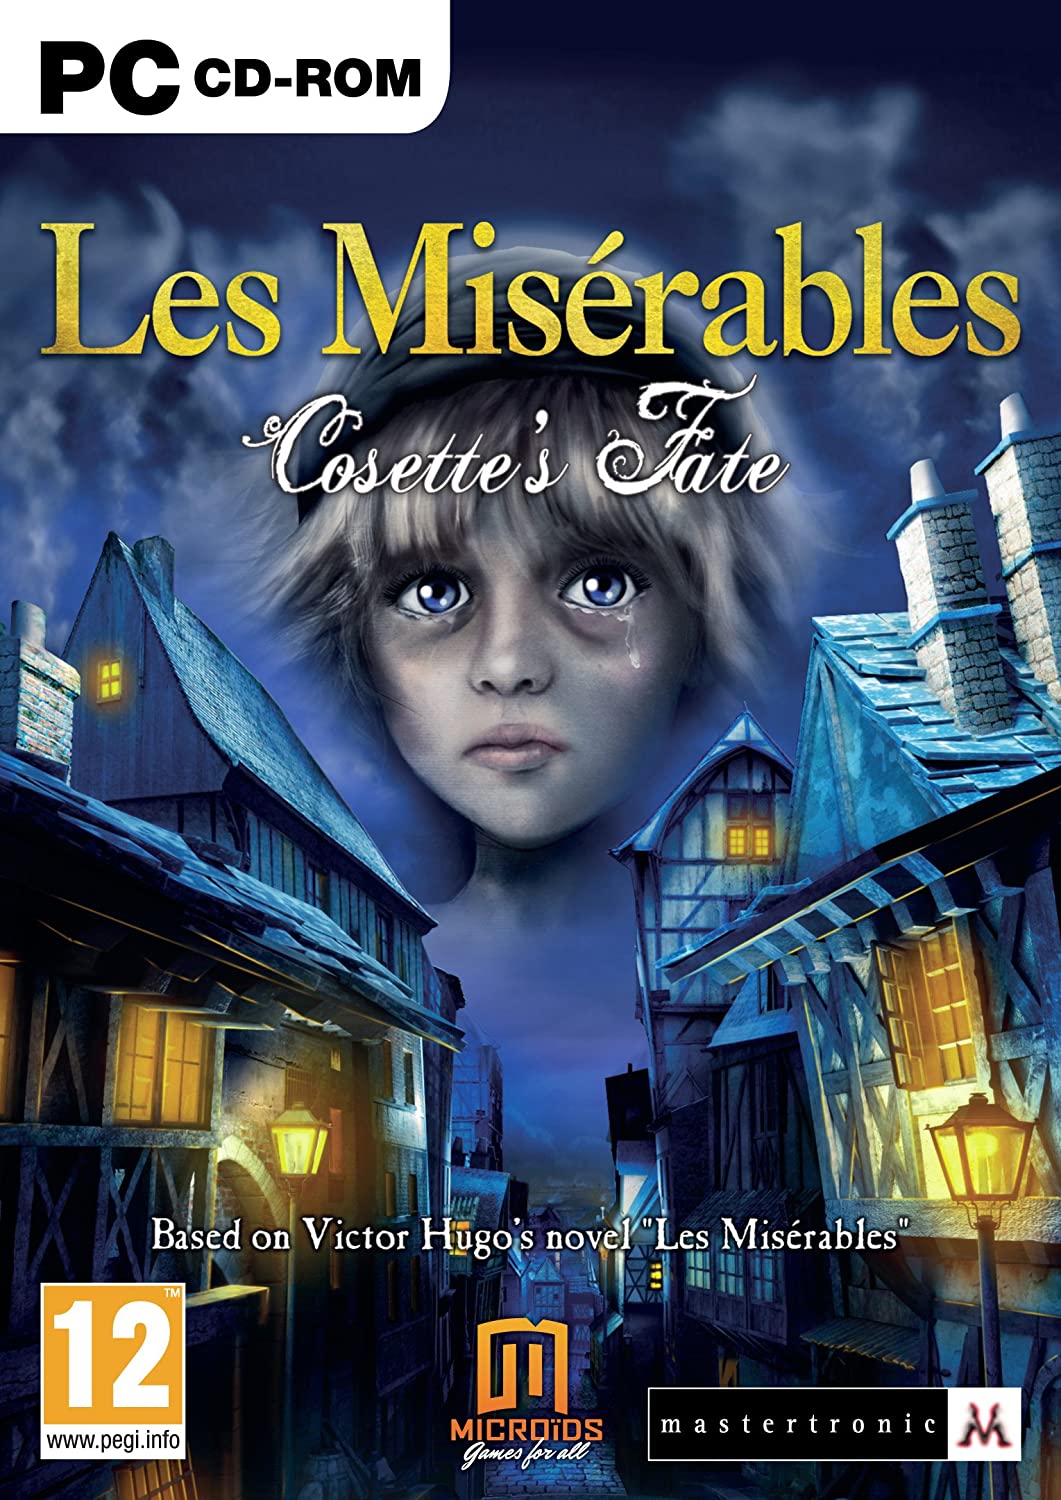 Les Misérables: Cosette's Fate [PC]